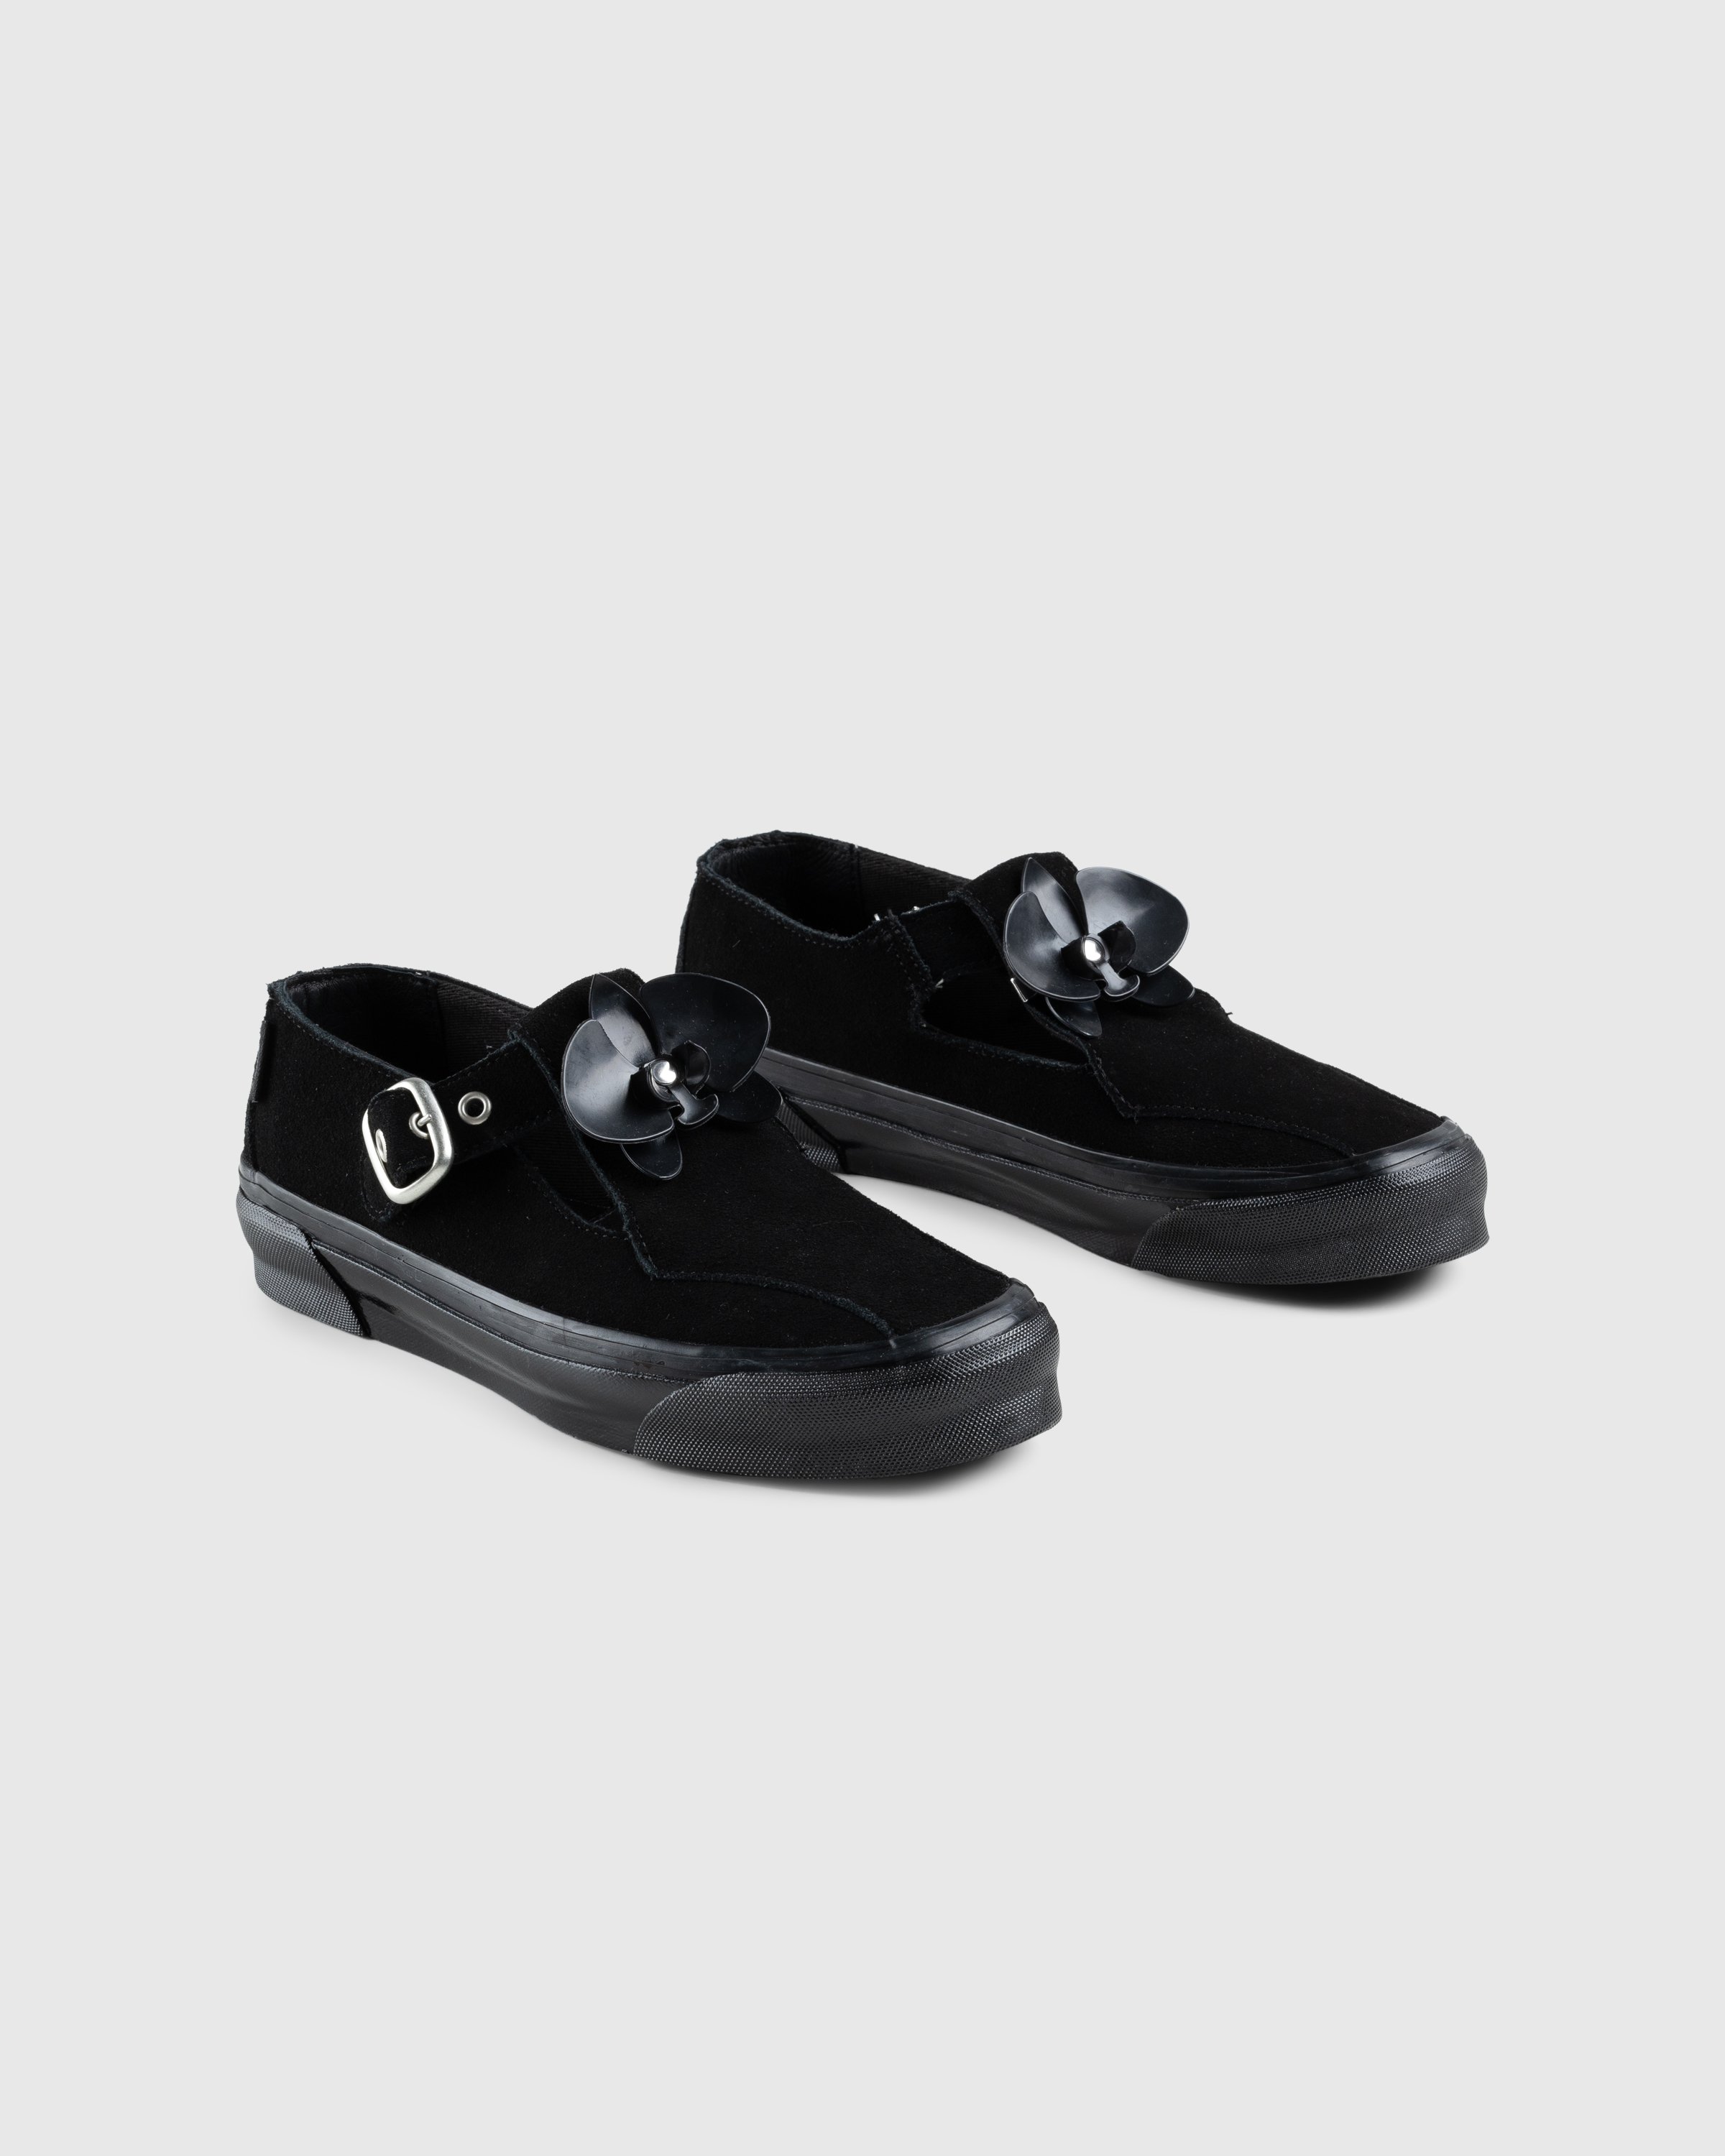 Vans - OG Style 93 LX Black - Footwear - Black - Image 4